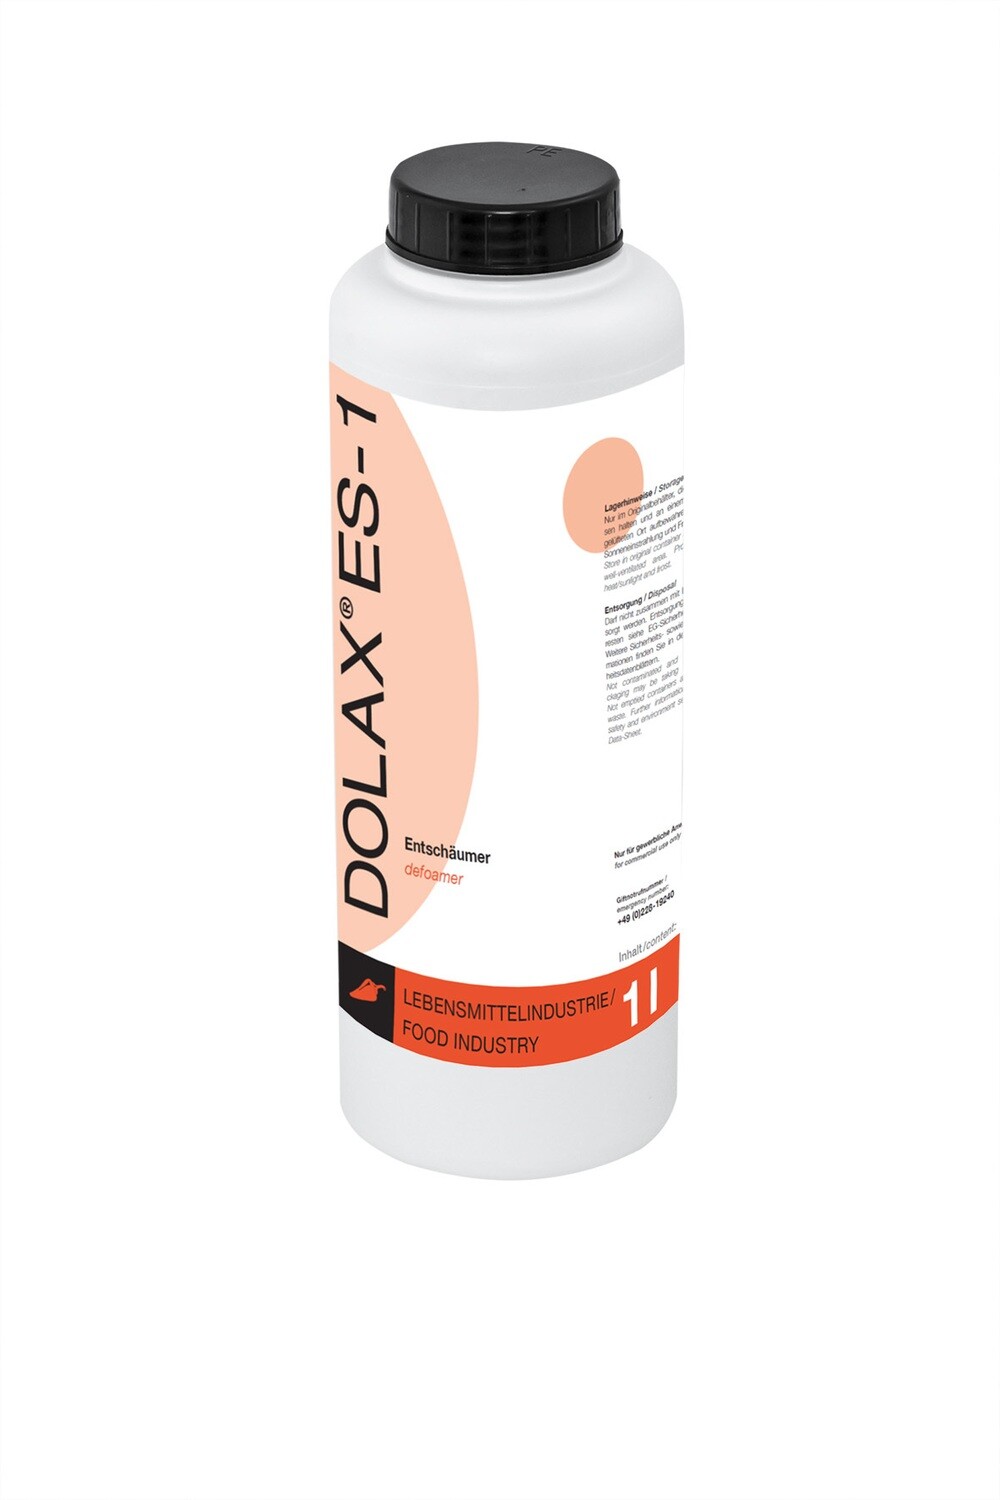 DOLAX ES-1
Bio Entschäumer